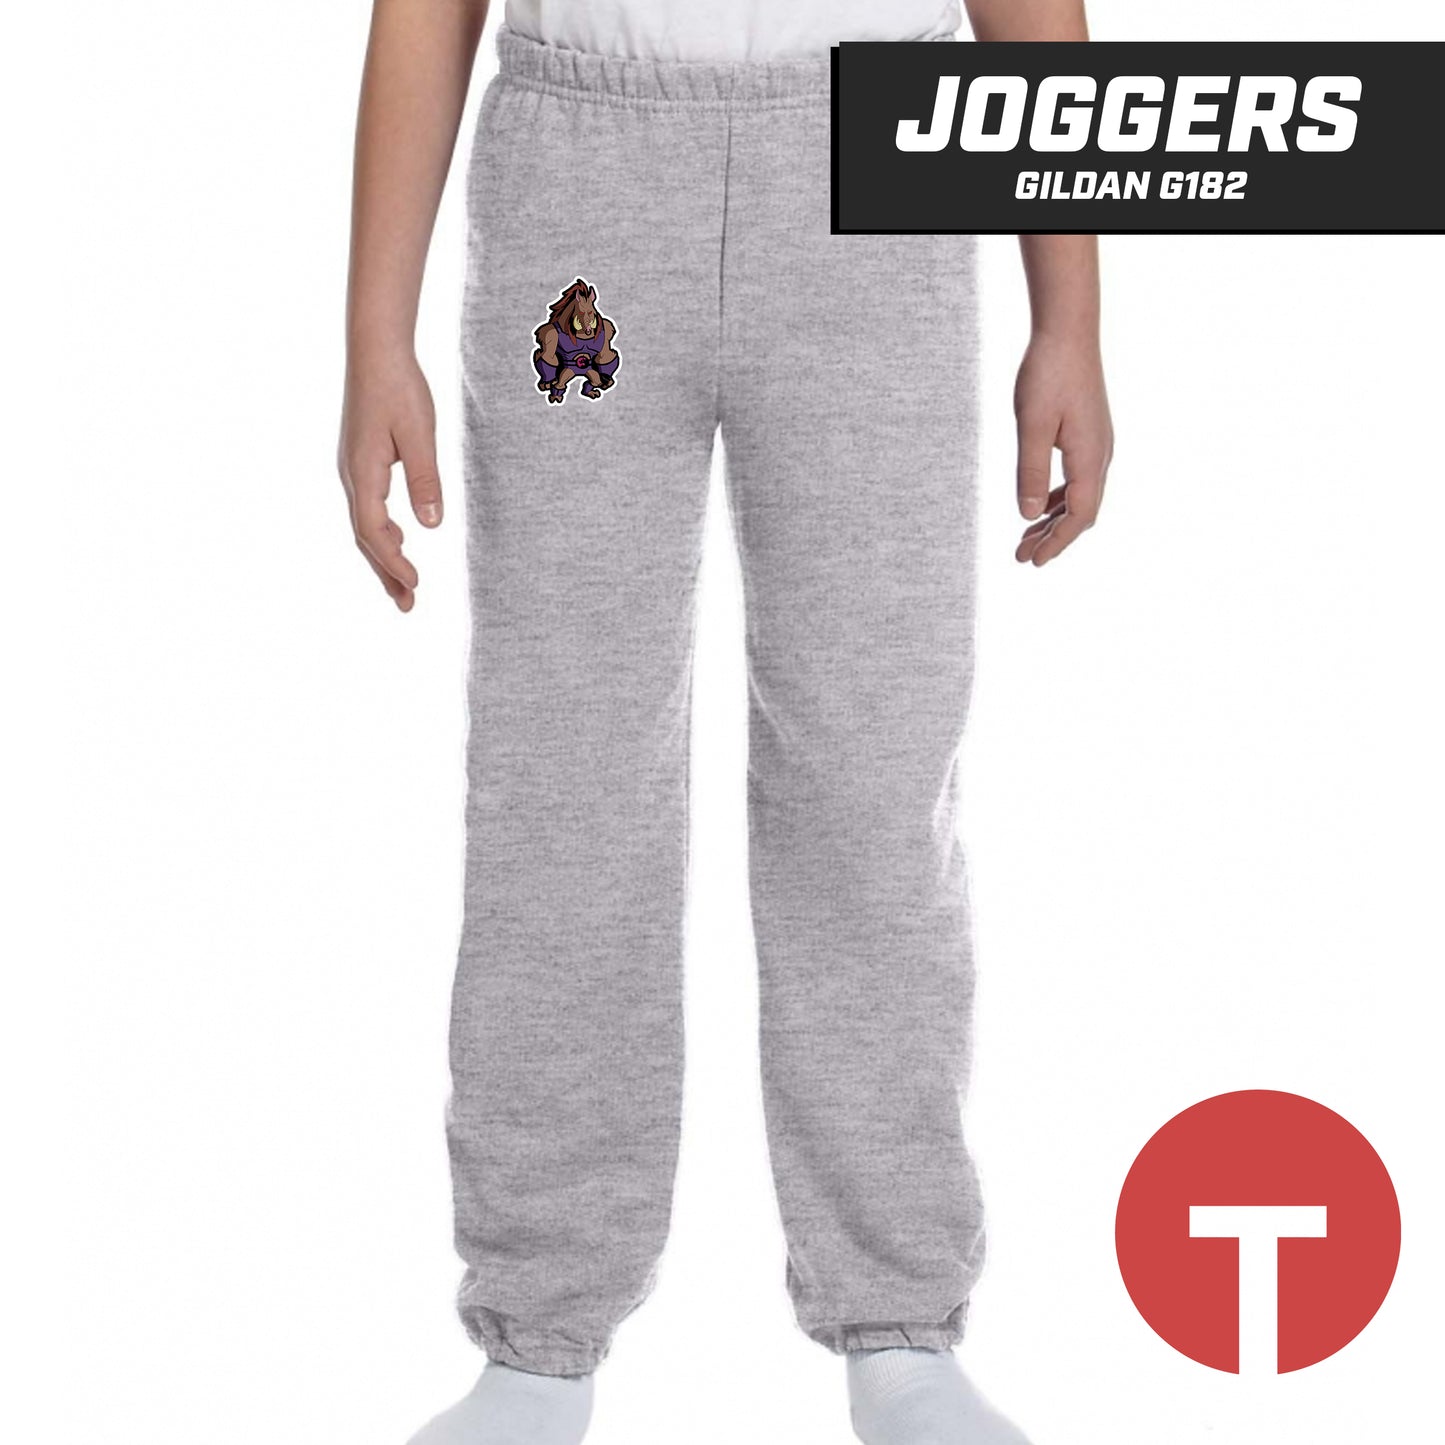 Thunderpigs - Jogger pants Gildan G182